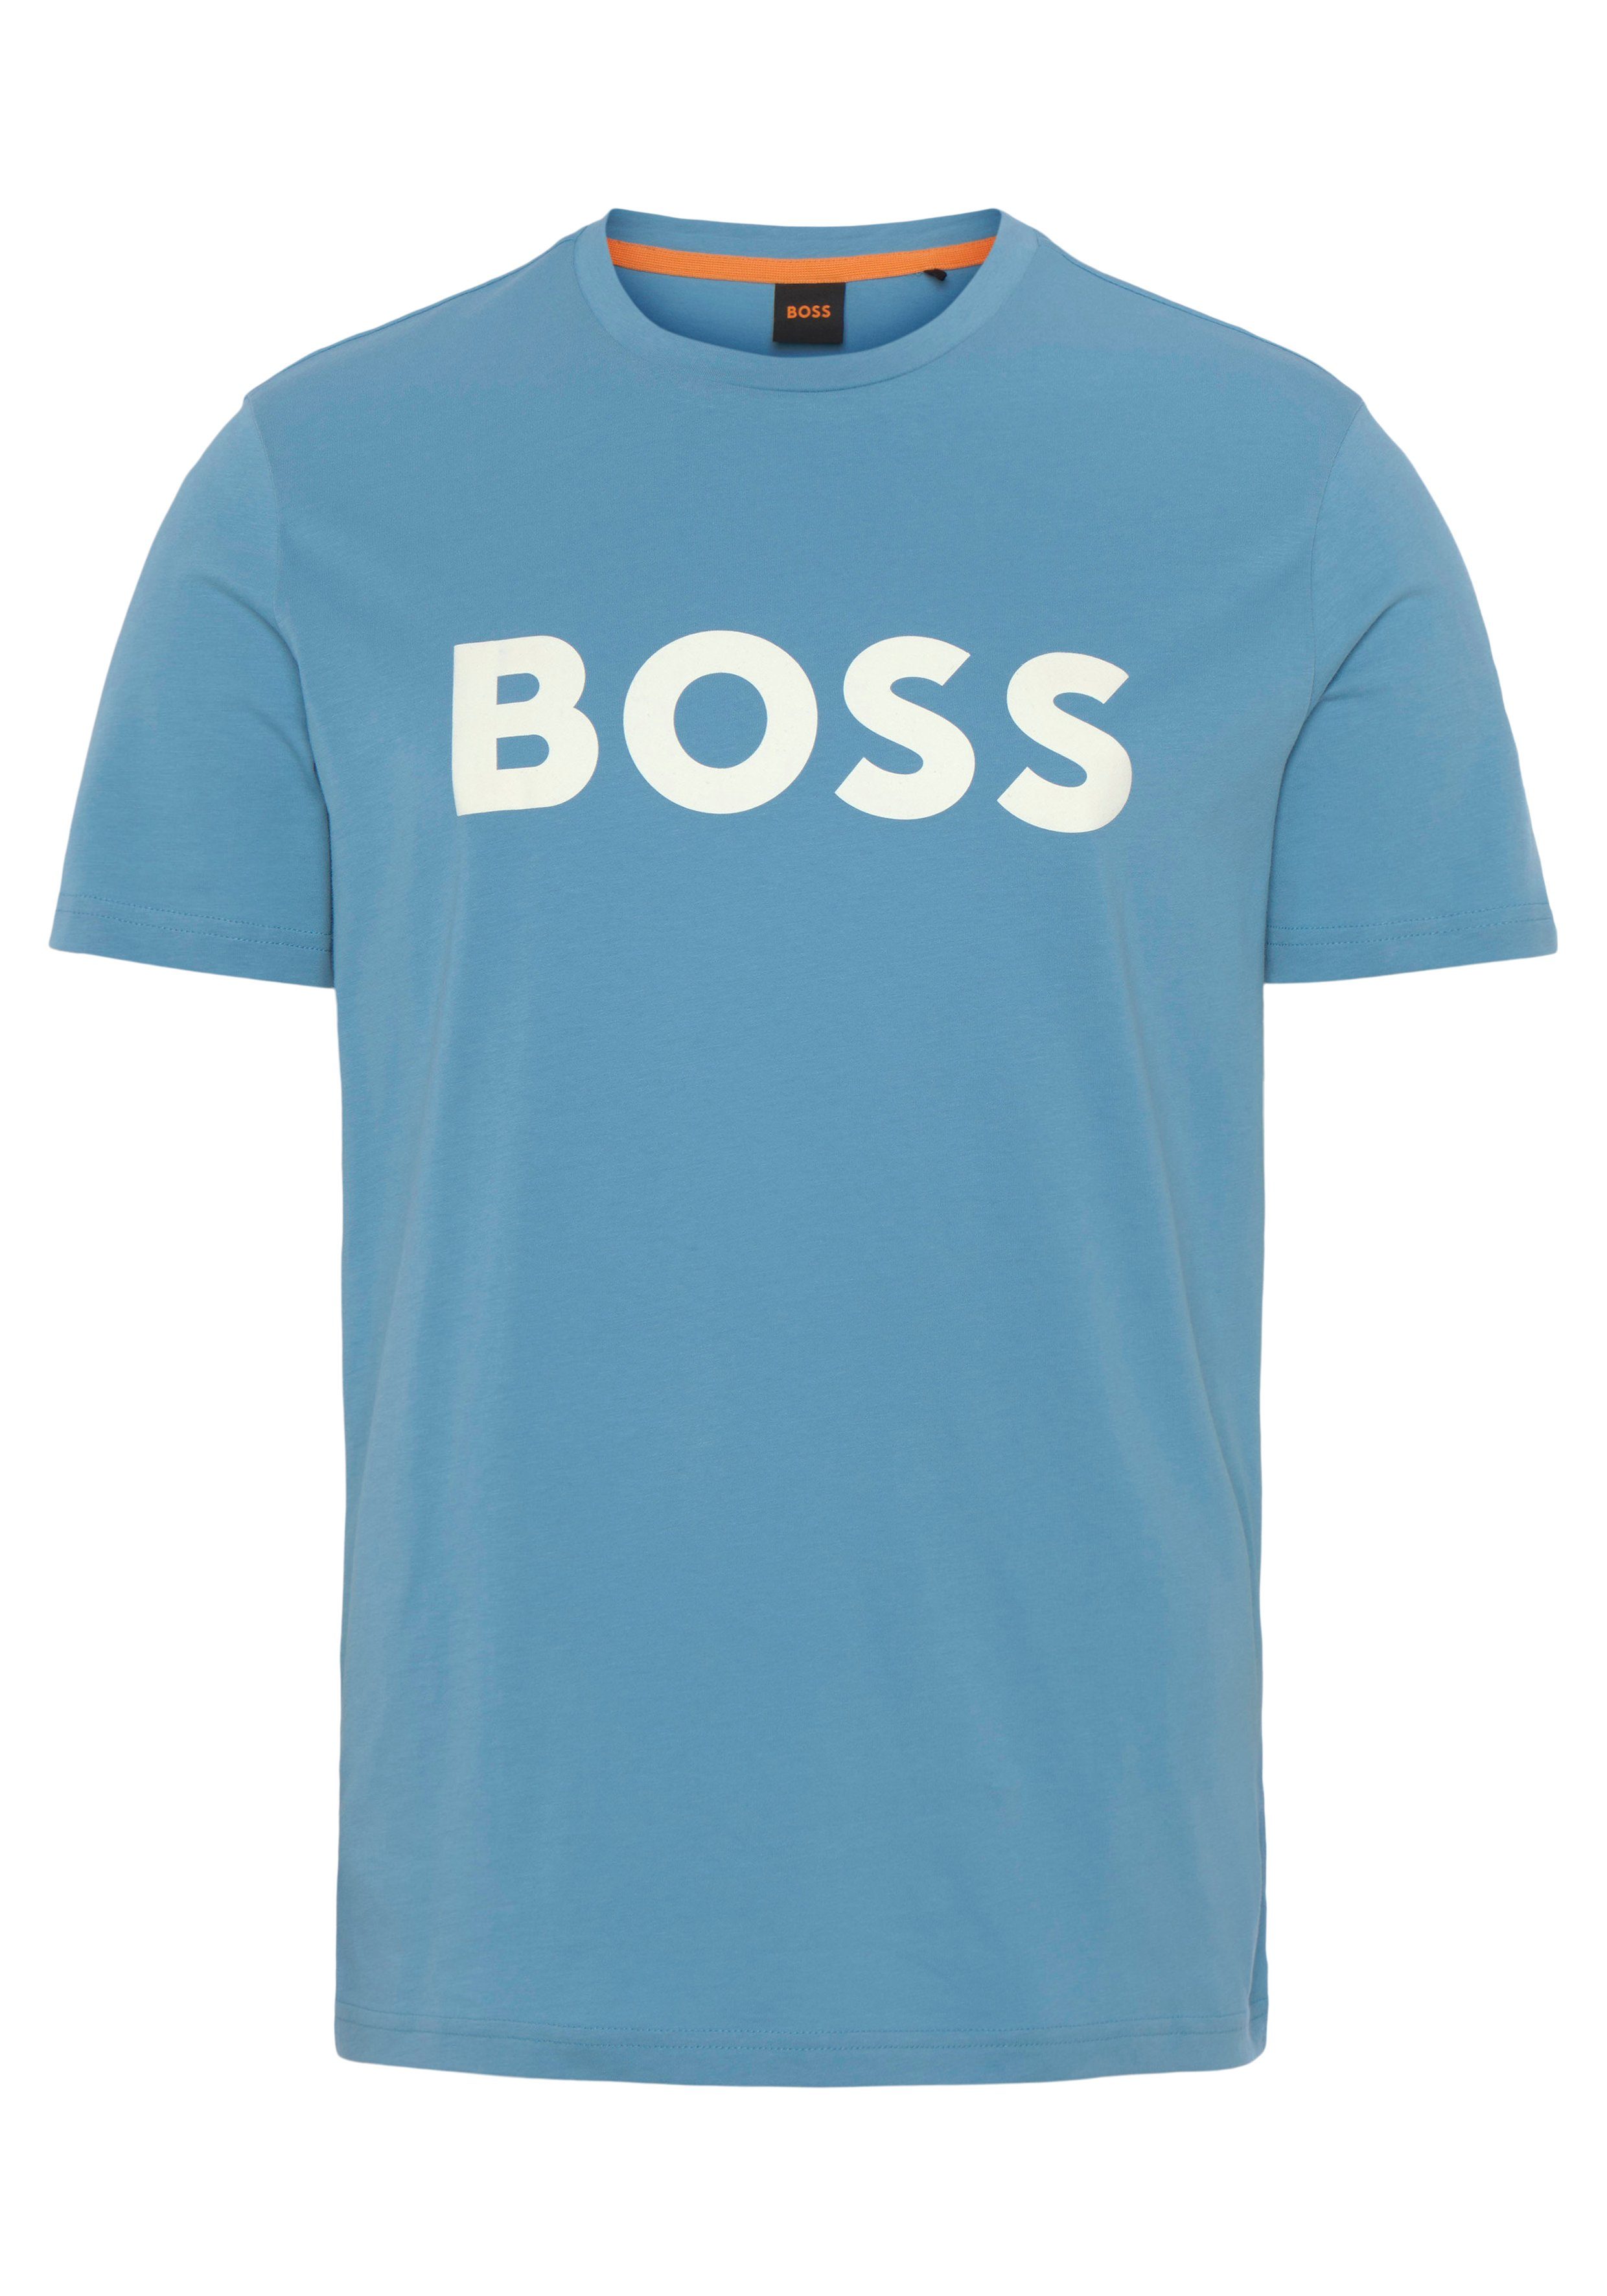 BOSS ORANGE T-Shirt Thinking 1 10246016 01 mit großem BOSS Druck auf der Brust Open Blue 493